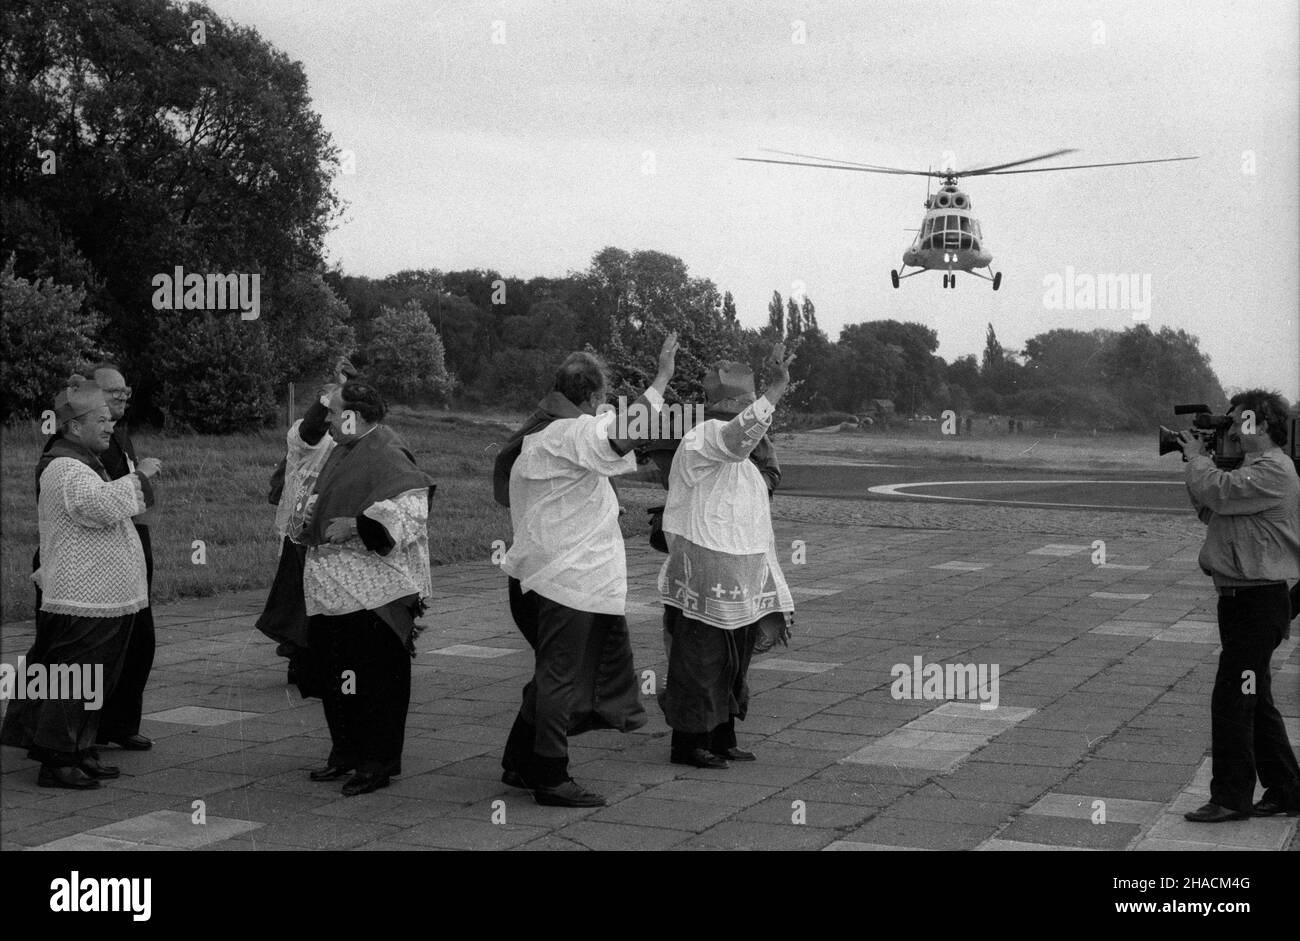 Szczecin, 1987-06-11. III pielgrzymka Ojca Œwiêtego Jana Paw³a II do Polski. Lotnisko w D¹biu. Nz. kap³ani witaj¹cy papieski œmig³owiec. ppr  PAP/CAF/Jerzy Undro      Szczecin, June 11, 1987. Pope John Paul II's 3rd pilgrimage to Poland. Airport in Dabie. Pictured: priests greeting the Pope's helicopter.  ppr  PAP/CAF/Jerzy Undro Stock Photo